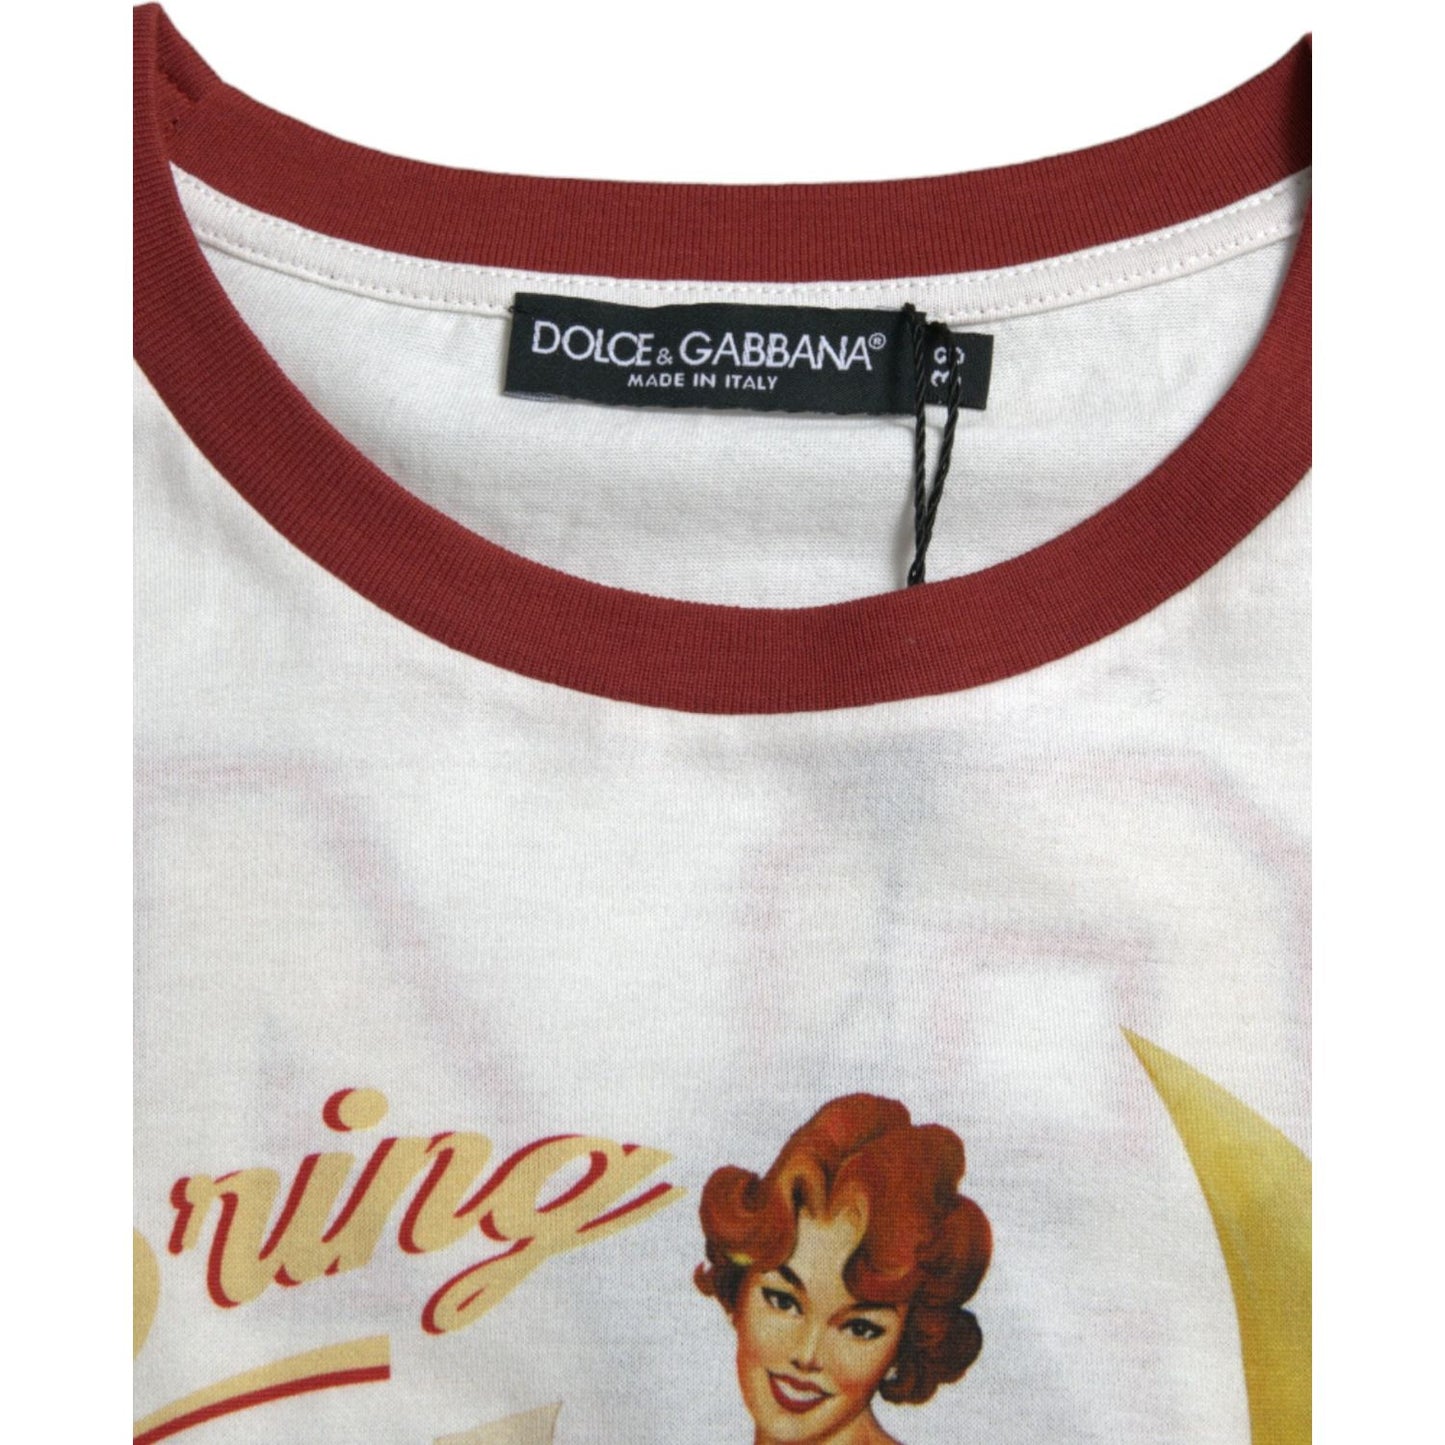 Dolce & Gabbana Elegant White Cotton Crew Neck Tee white-bring-me-to-the-moon-t-shirt-top